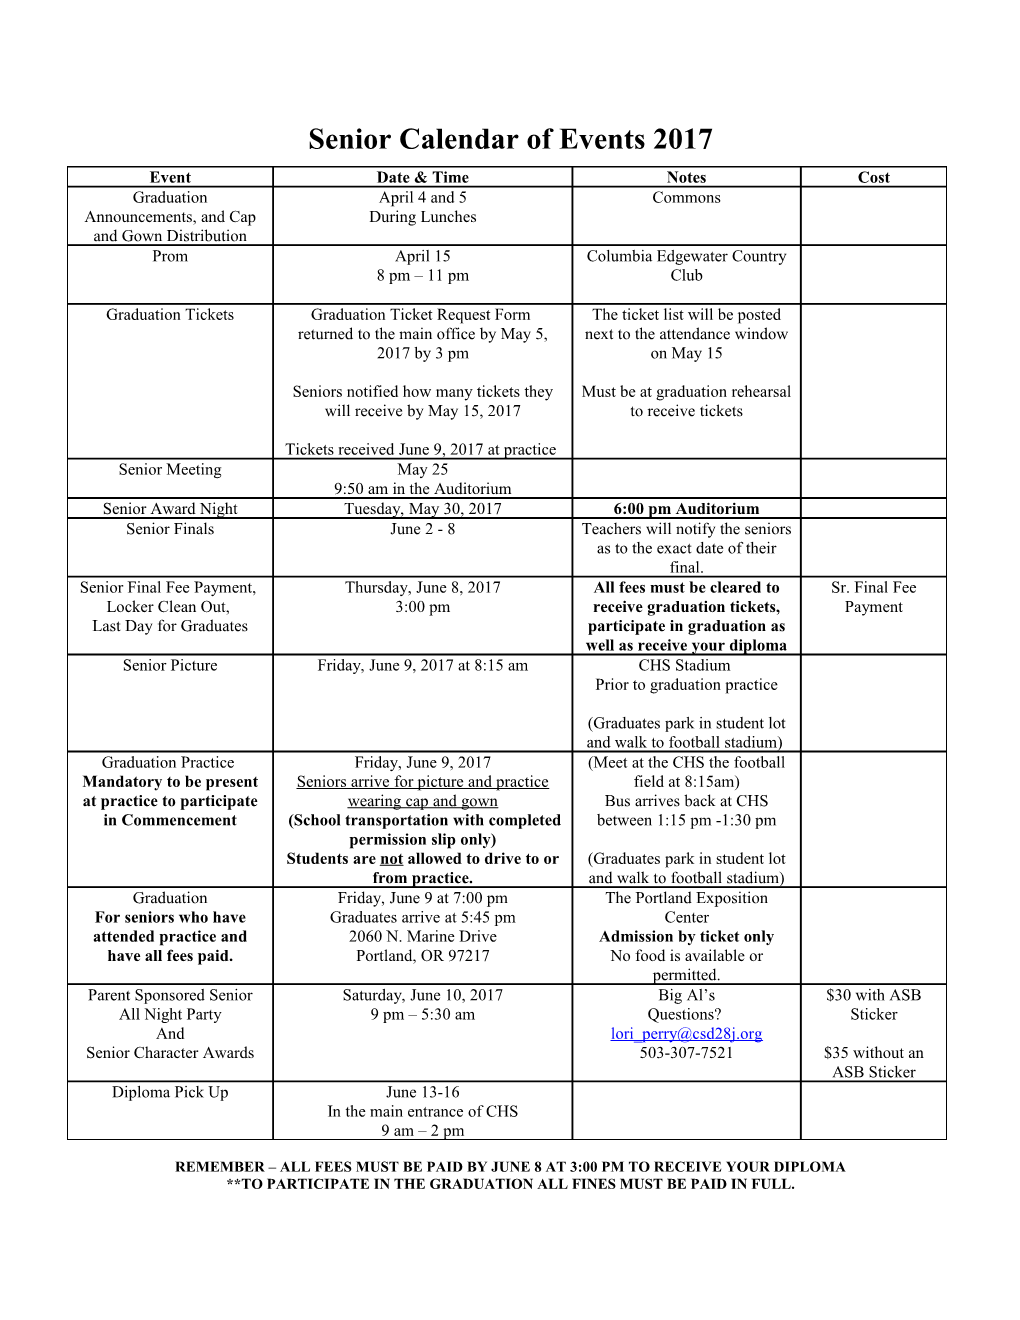 Senior Calendar of Events 2008